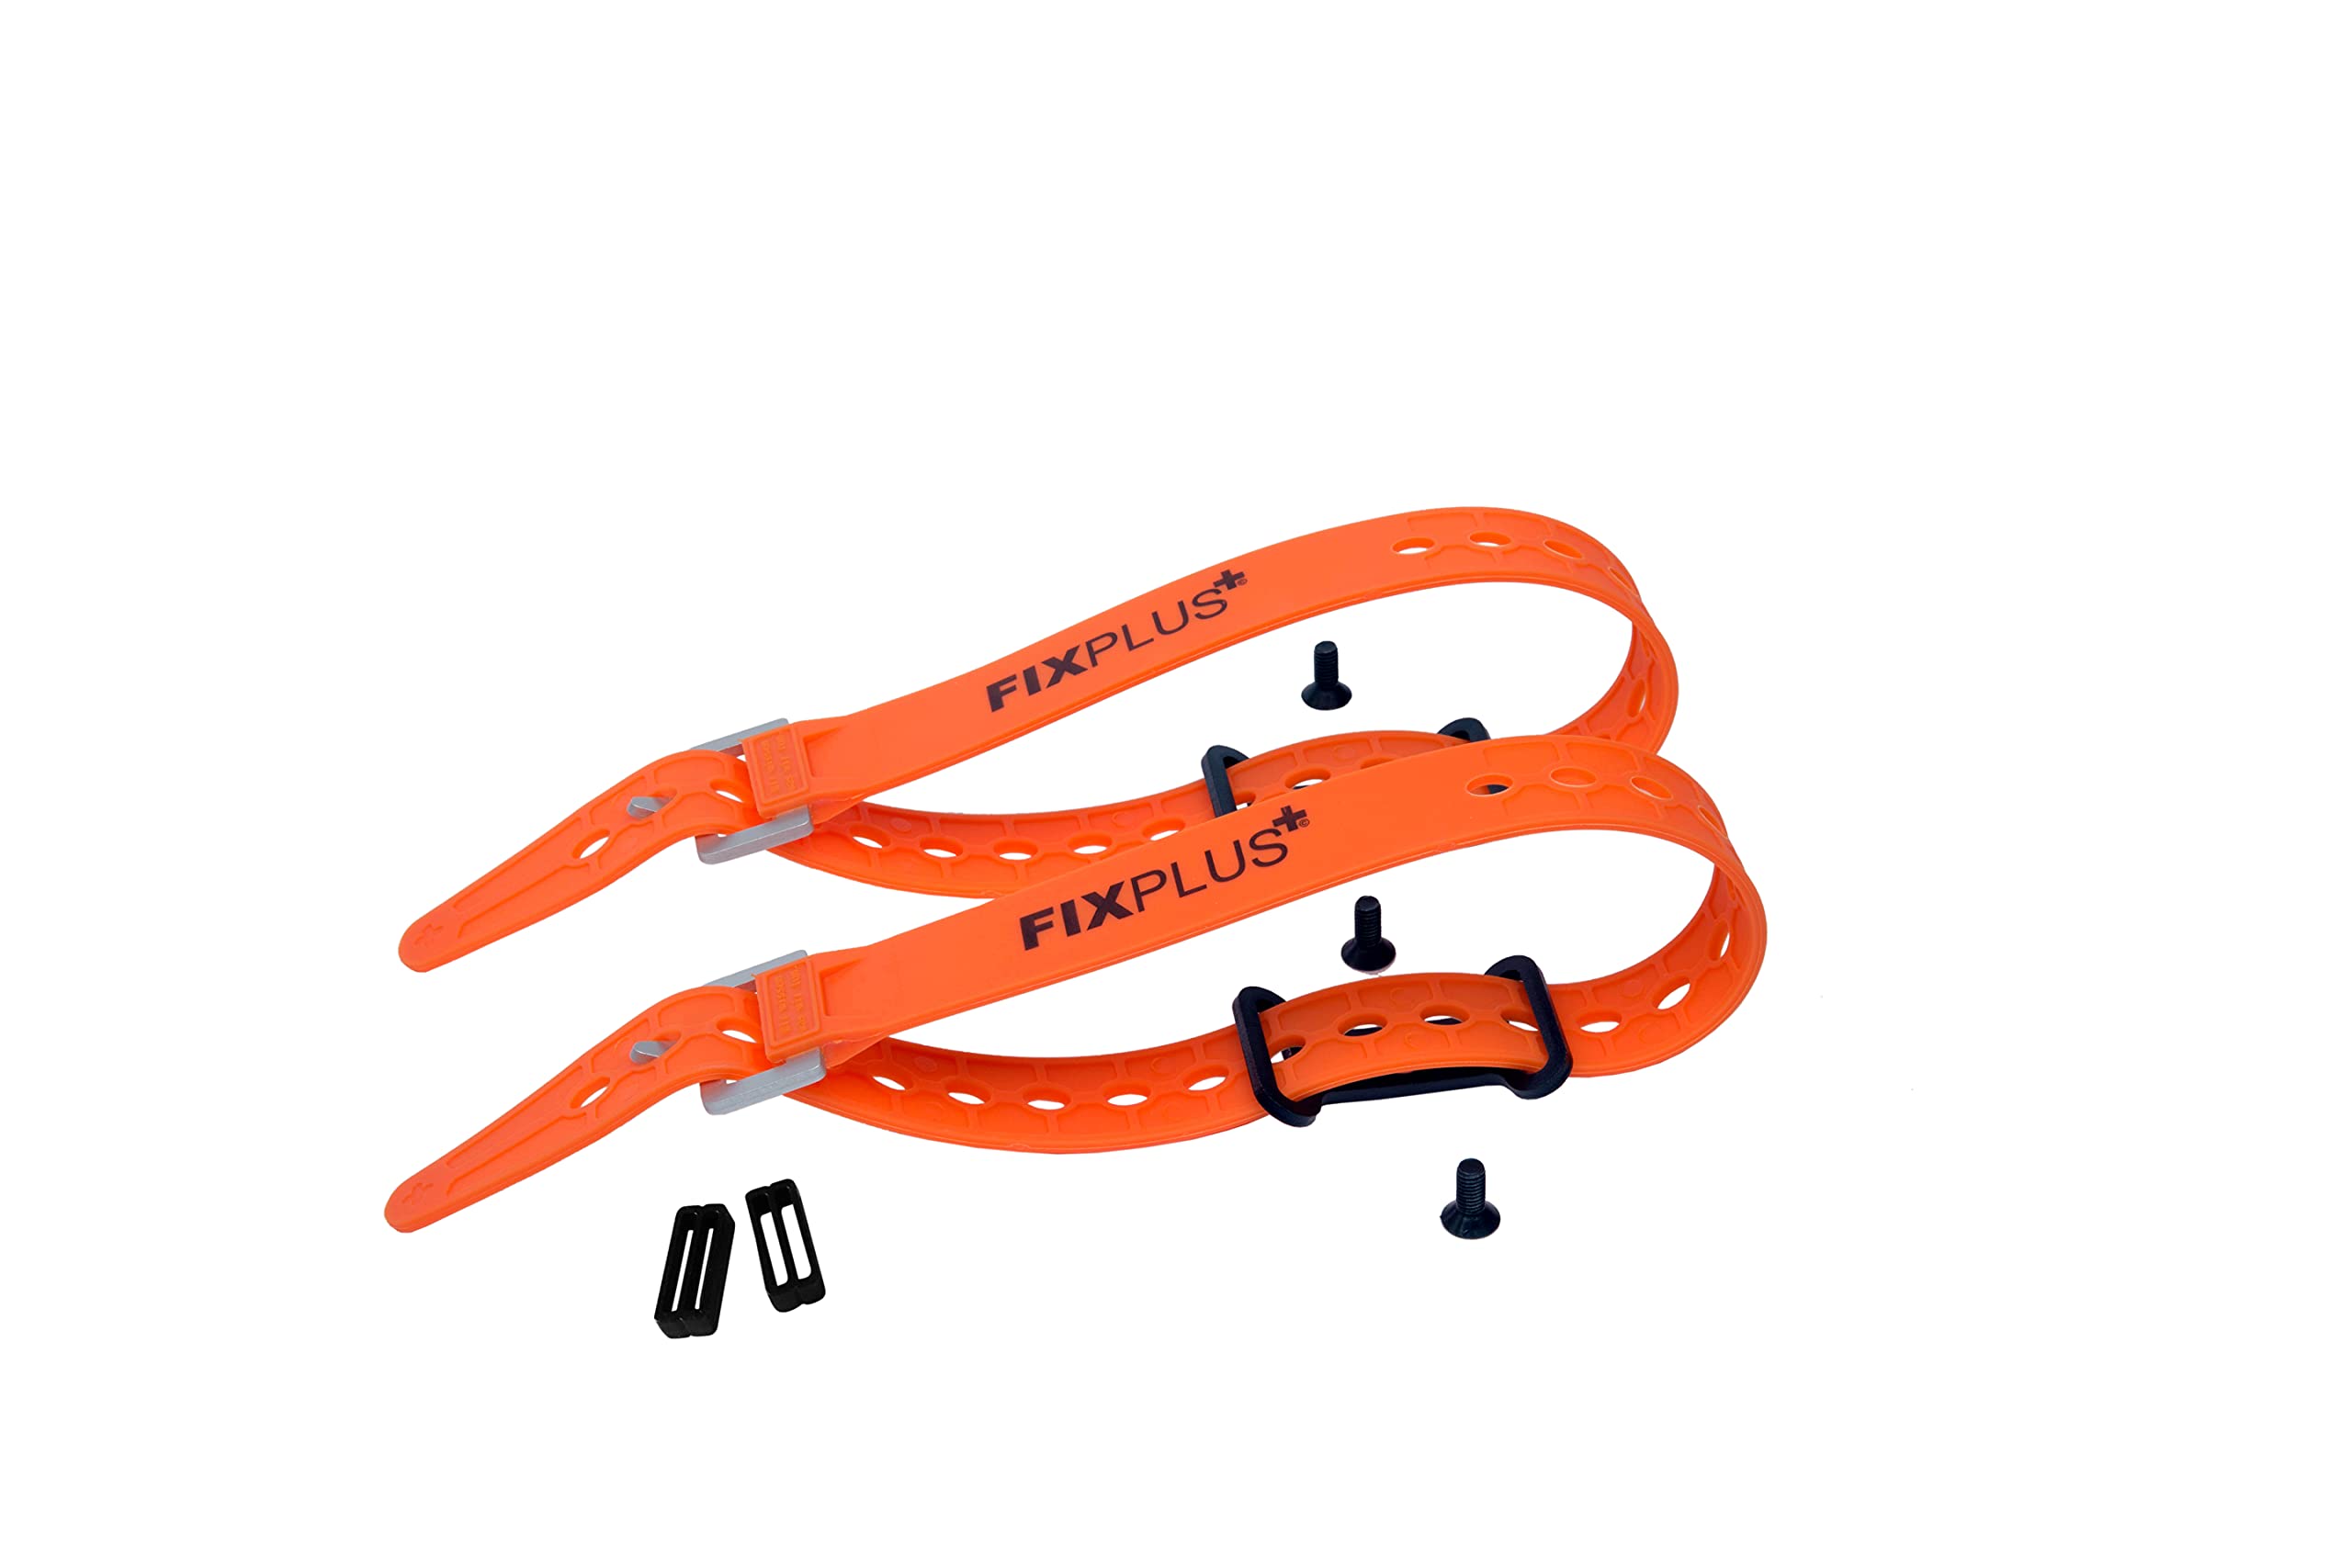 Fixplus Gear Tightener Set 46cm - Ladungsbefestigung am Fahrrad für große Teile – Zwei Aluminium Halter inkl. Schrauben + Zwei Spannbänder 46cm Länge (orange) und Zwei Strapkeeper (schwarz)